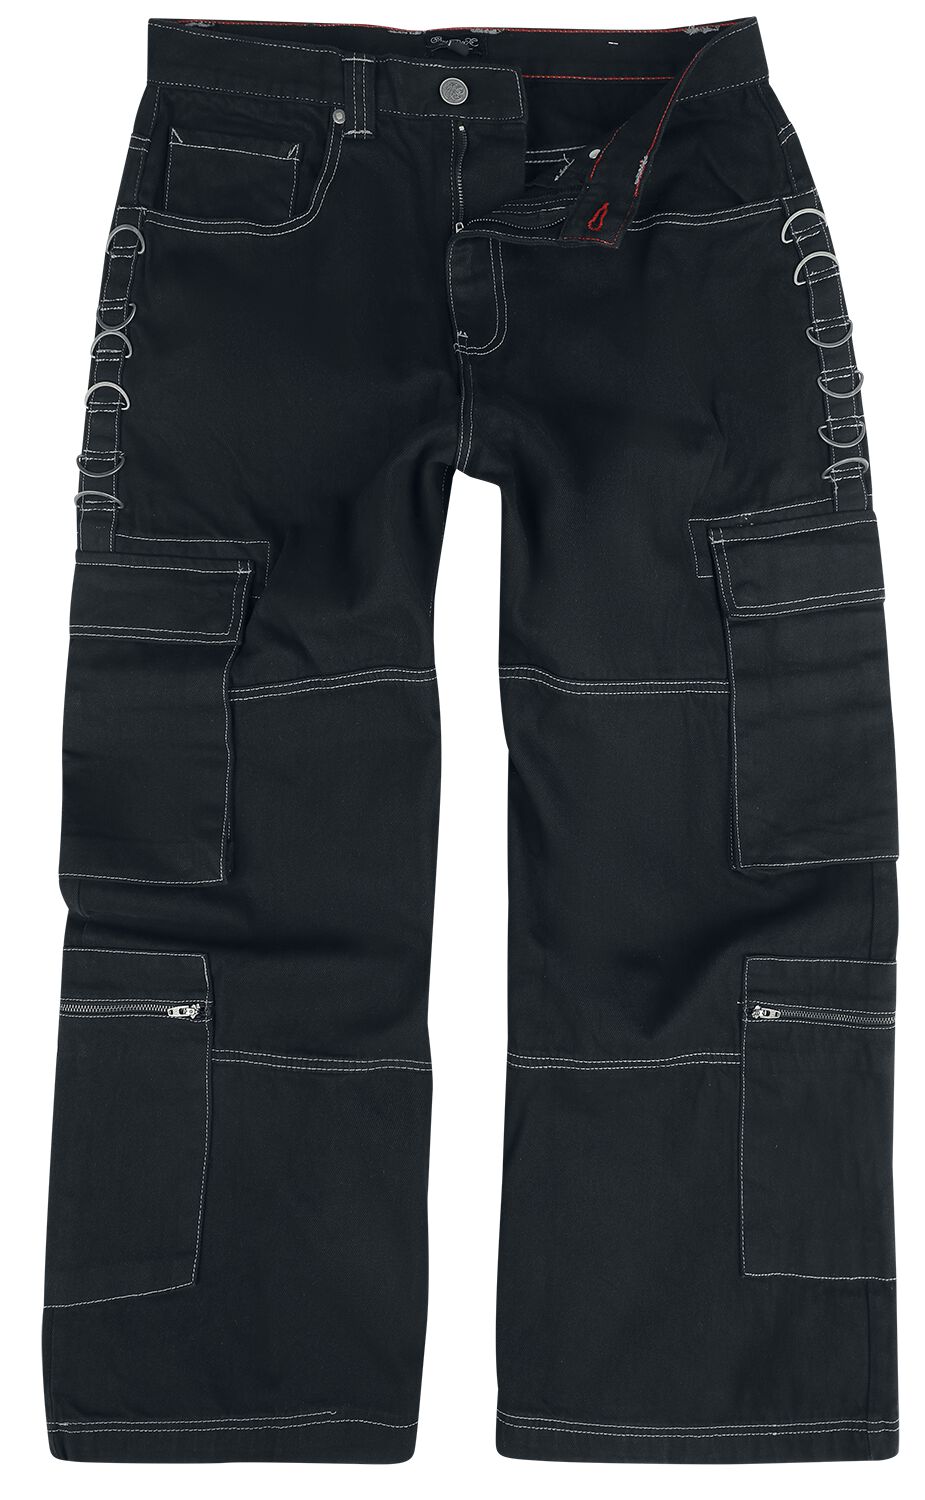 Chet Rock Jeans - Monaghan Utility Jeans - W30L32 bis W38L34 - für Männer - Größe W36L34 - schwarz von Chet Rock